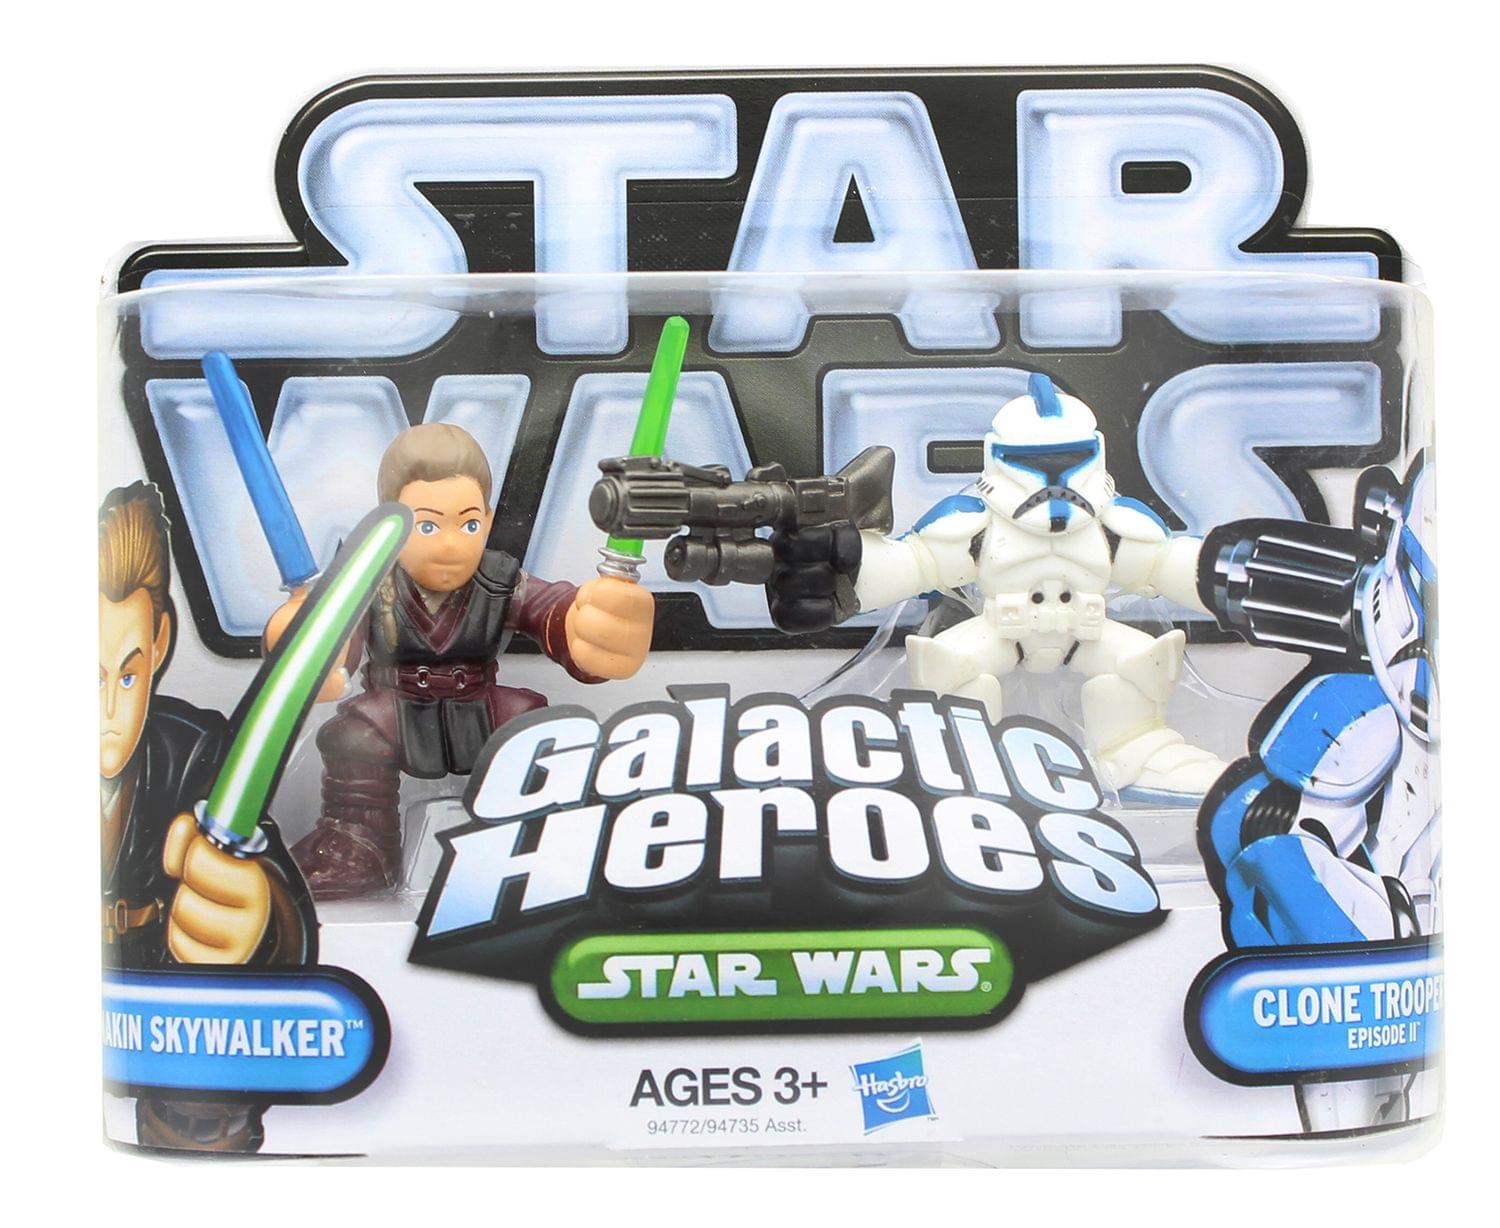 Star Wars Galactic Heroes Mini Figure 2 Pack - Anakin Skywalker & Clone Trooper